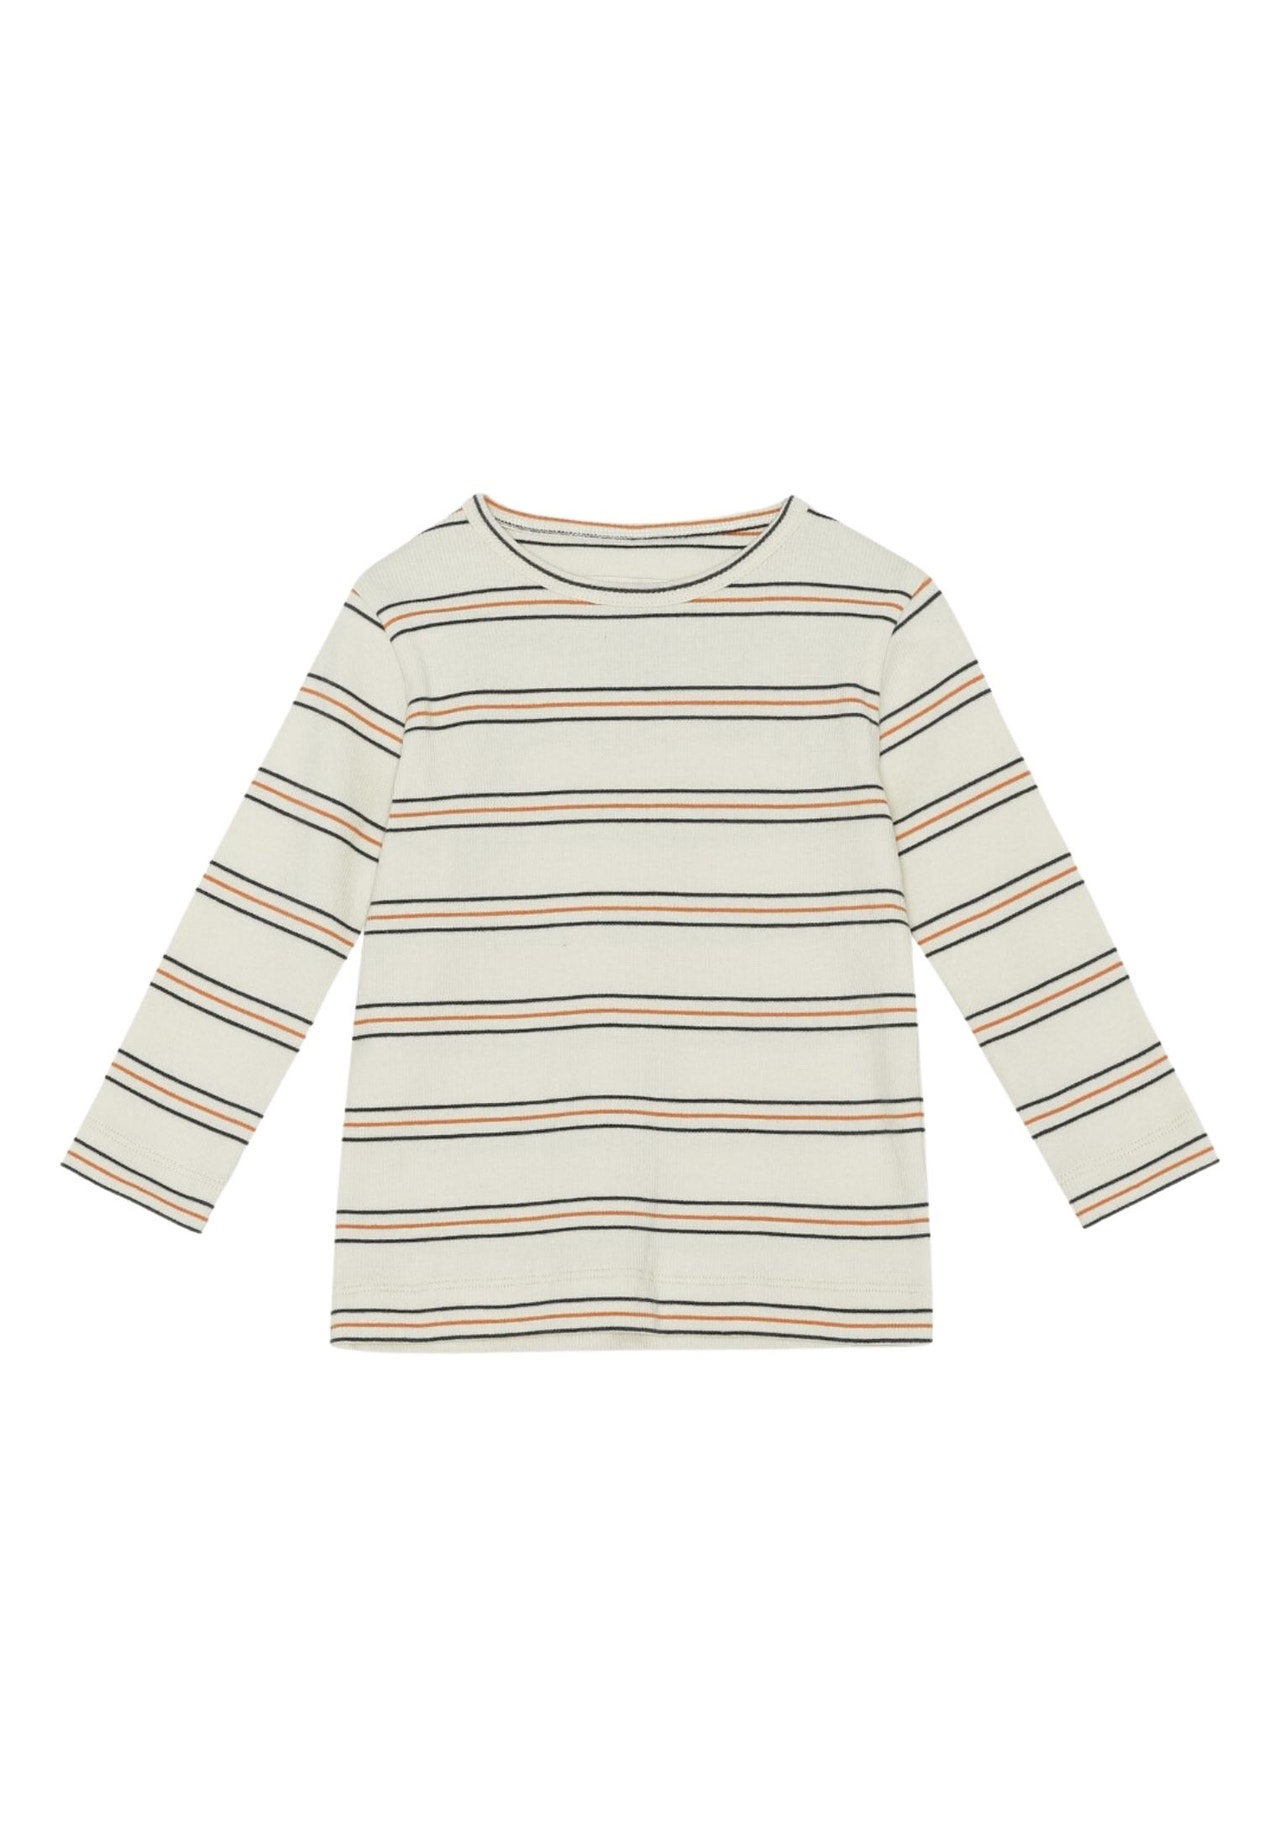 MAMA.LICIOUS vacvac CARLY blouse -Seed Pearl stripes - 99999961